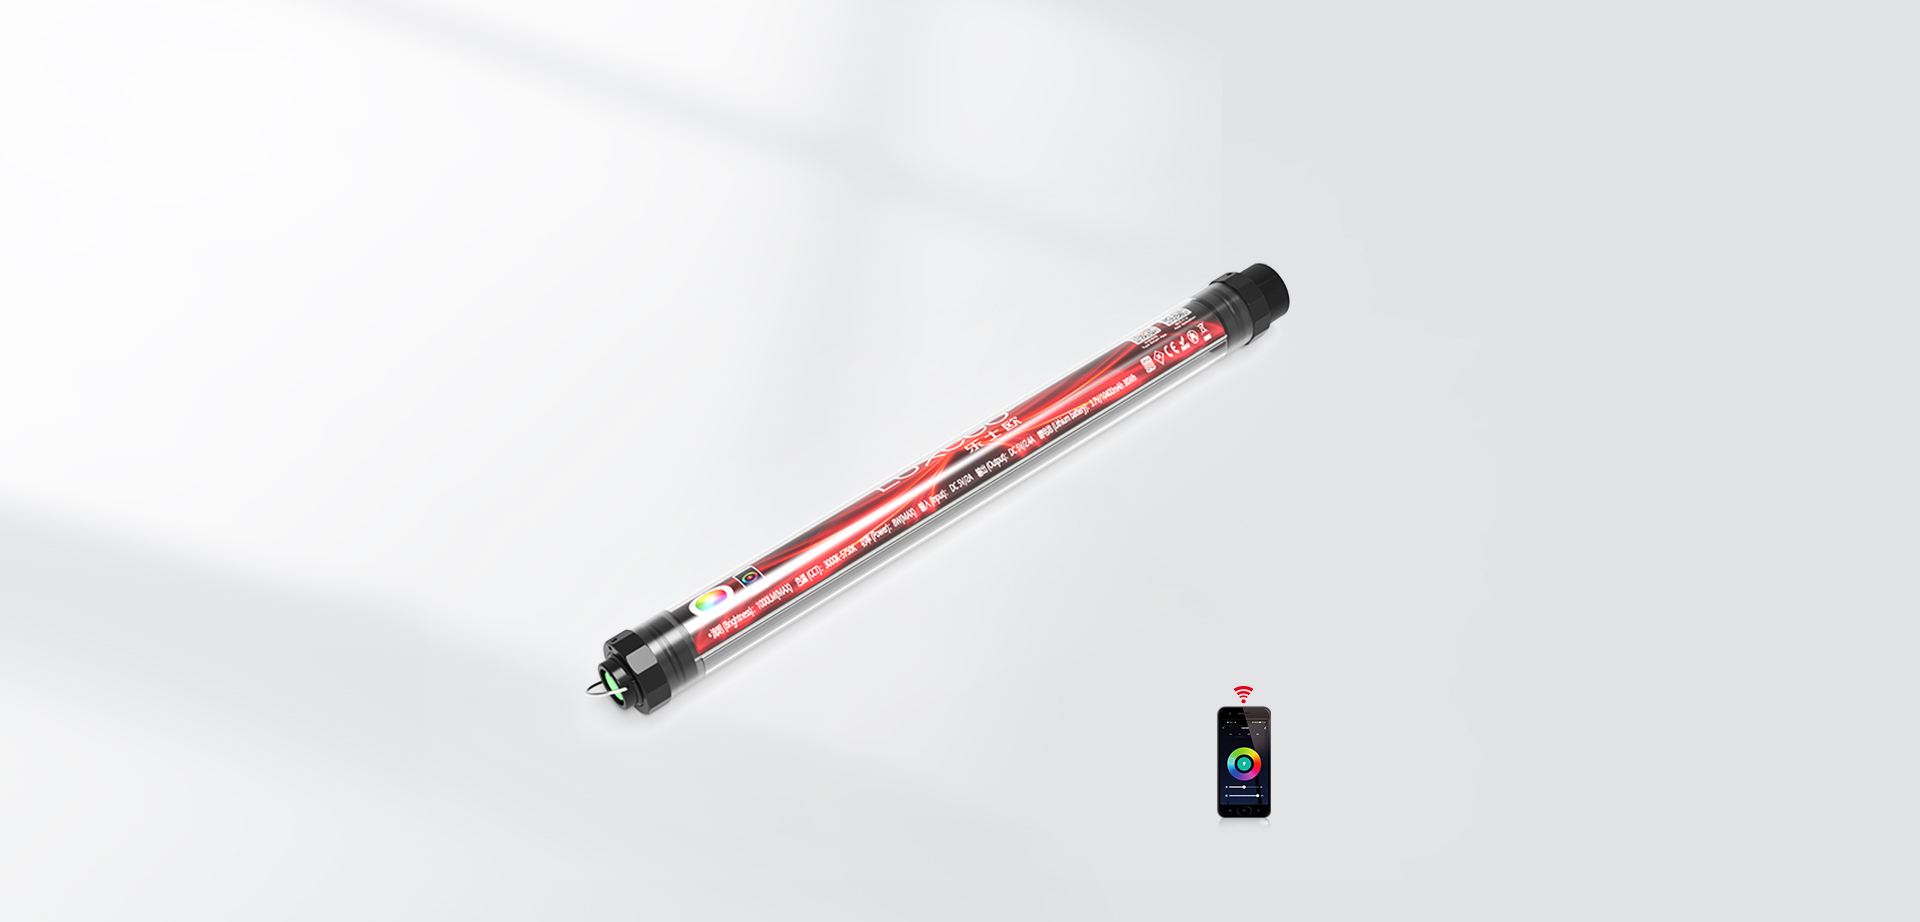 P7RGB Pro LED Waterproof light stick